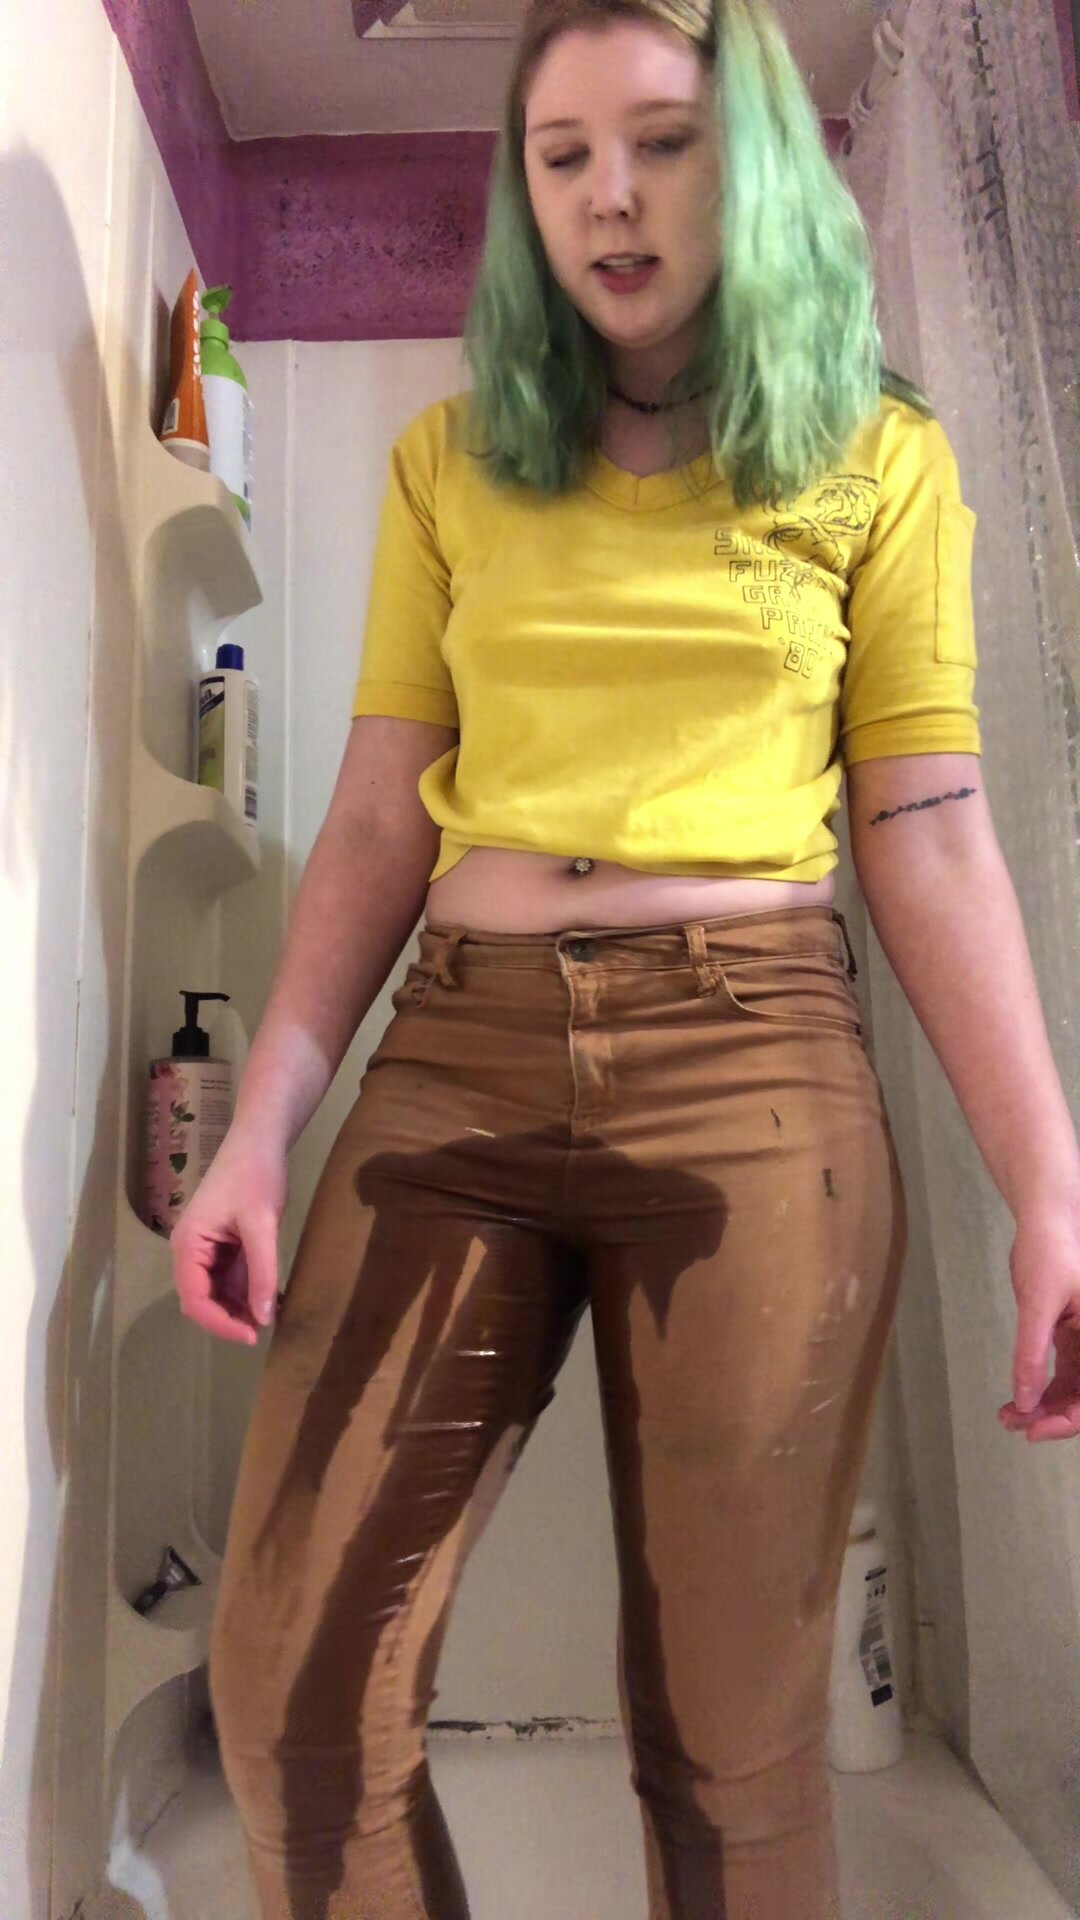 girl peeing her pants on webca gallerie